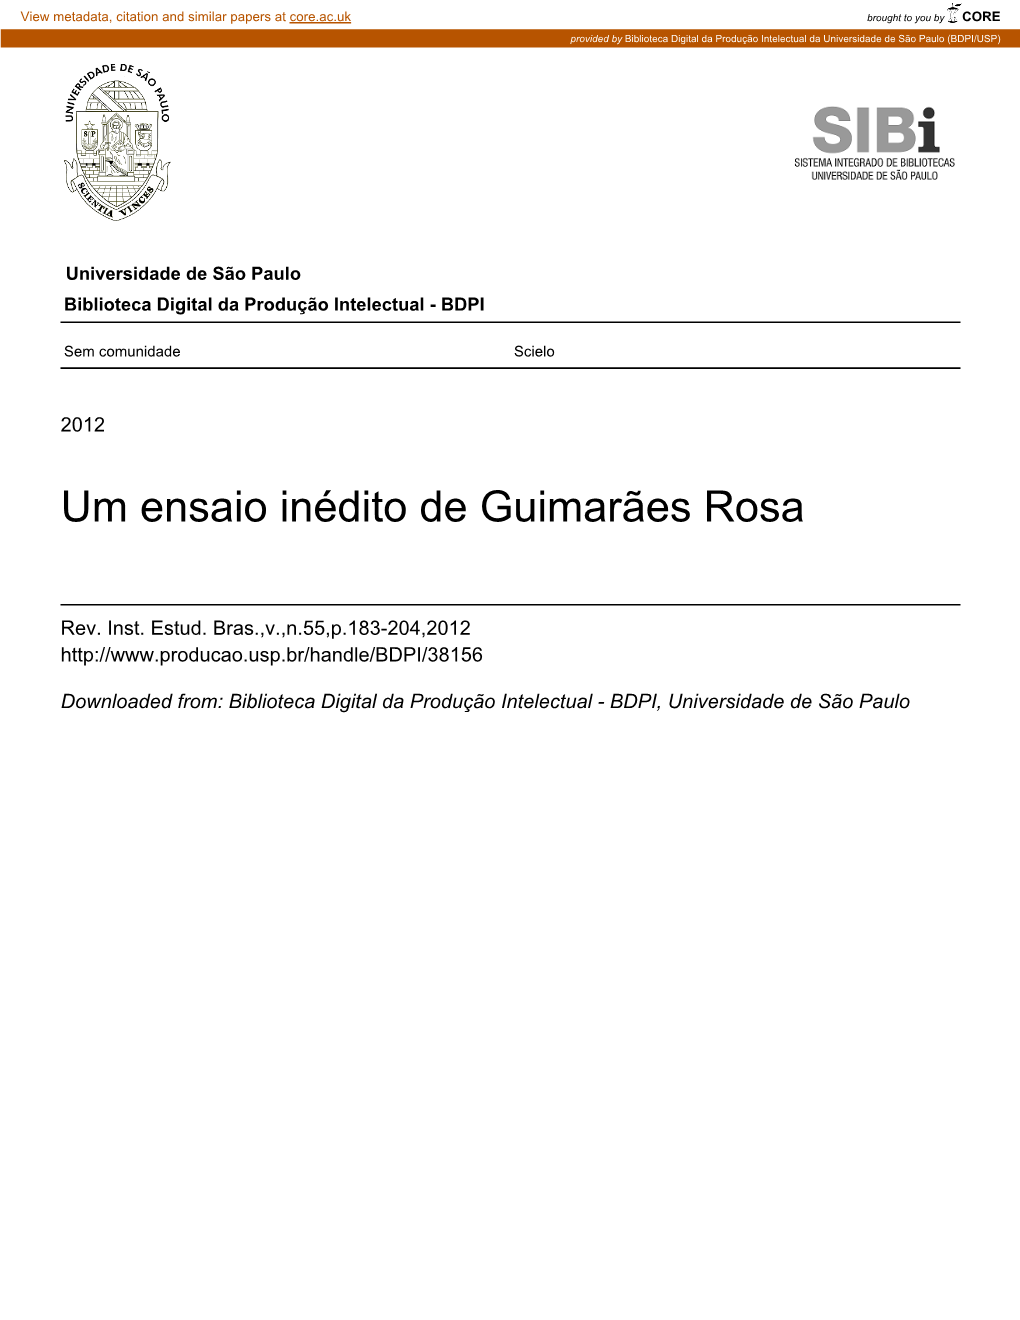 Um Ensaio Inédito De Guimarães Rosa